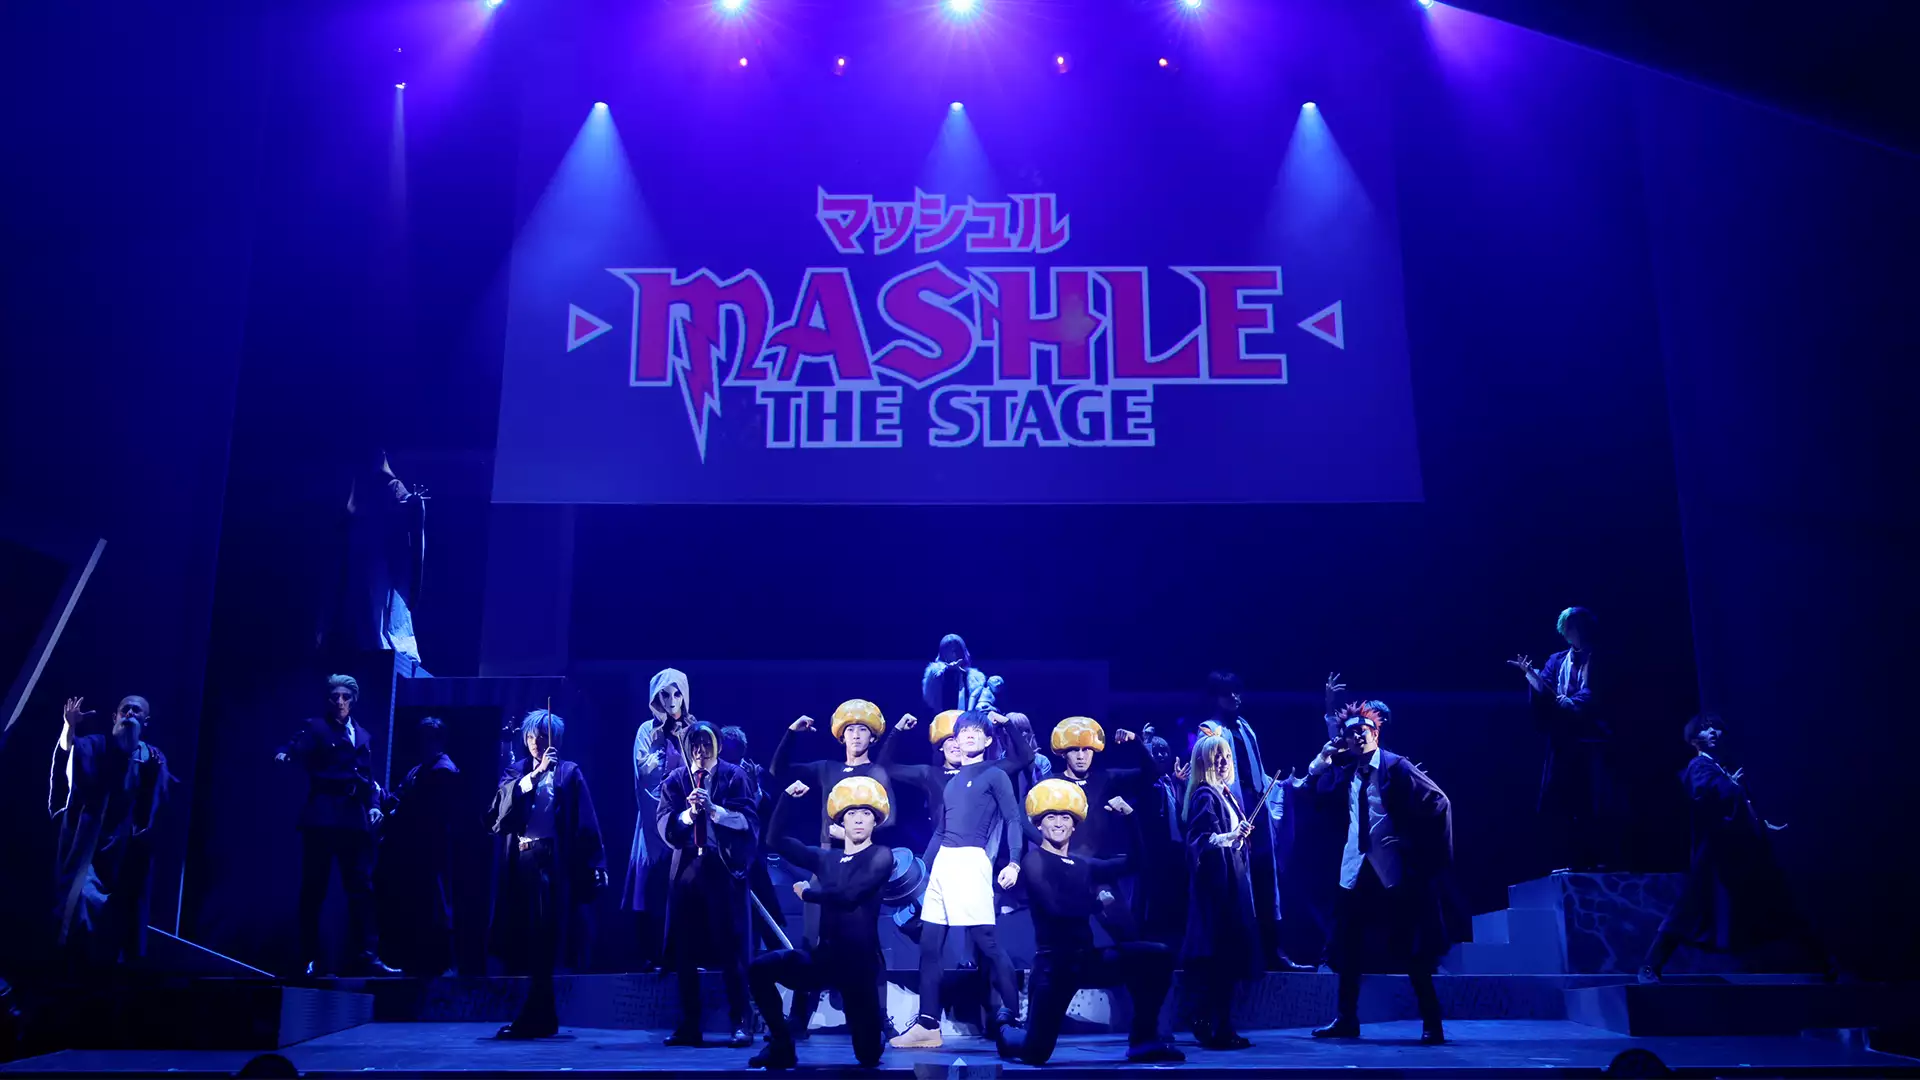 「マッシュル-MASHLE-」THE STAGE　7/17 18:00公演 大千秋楽